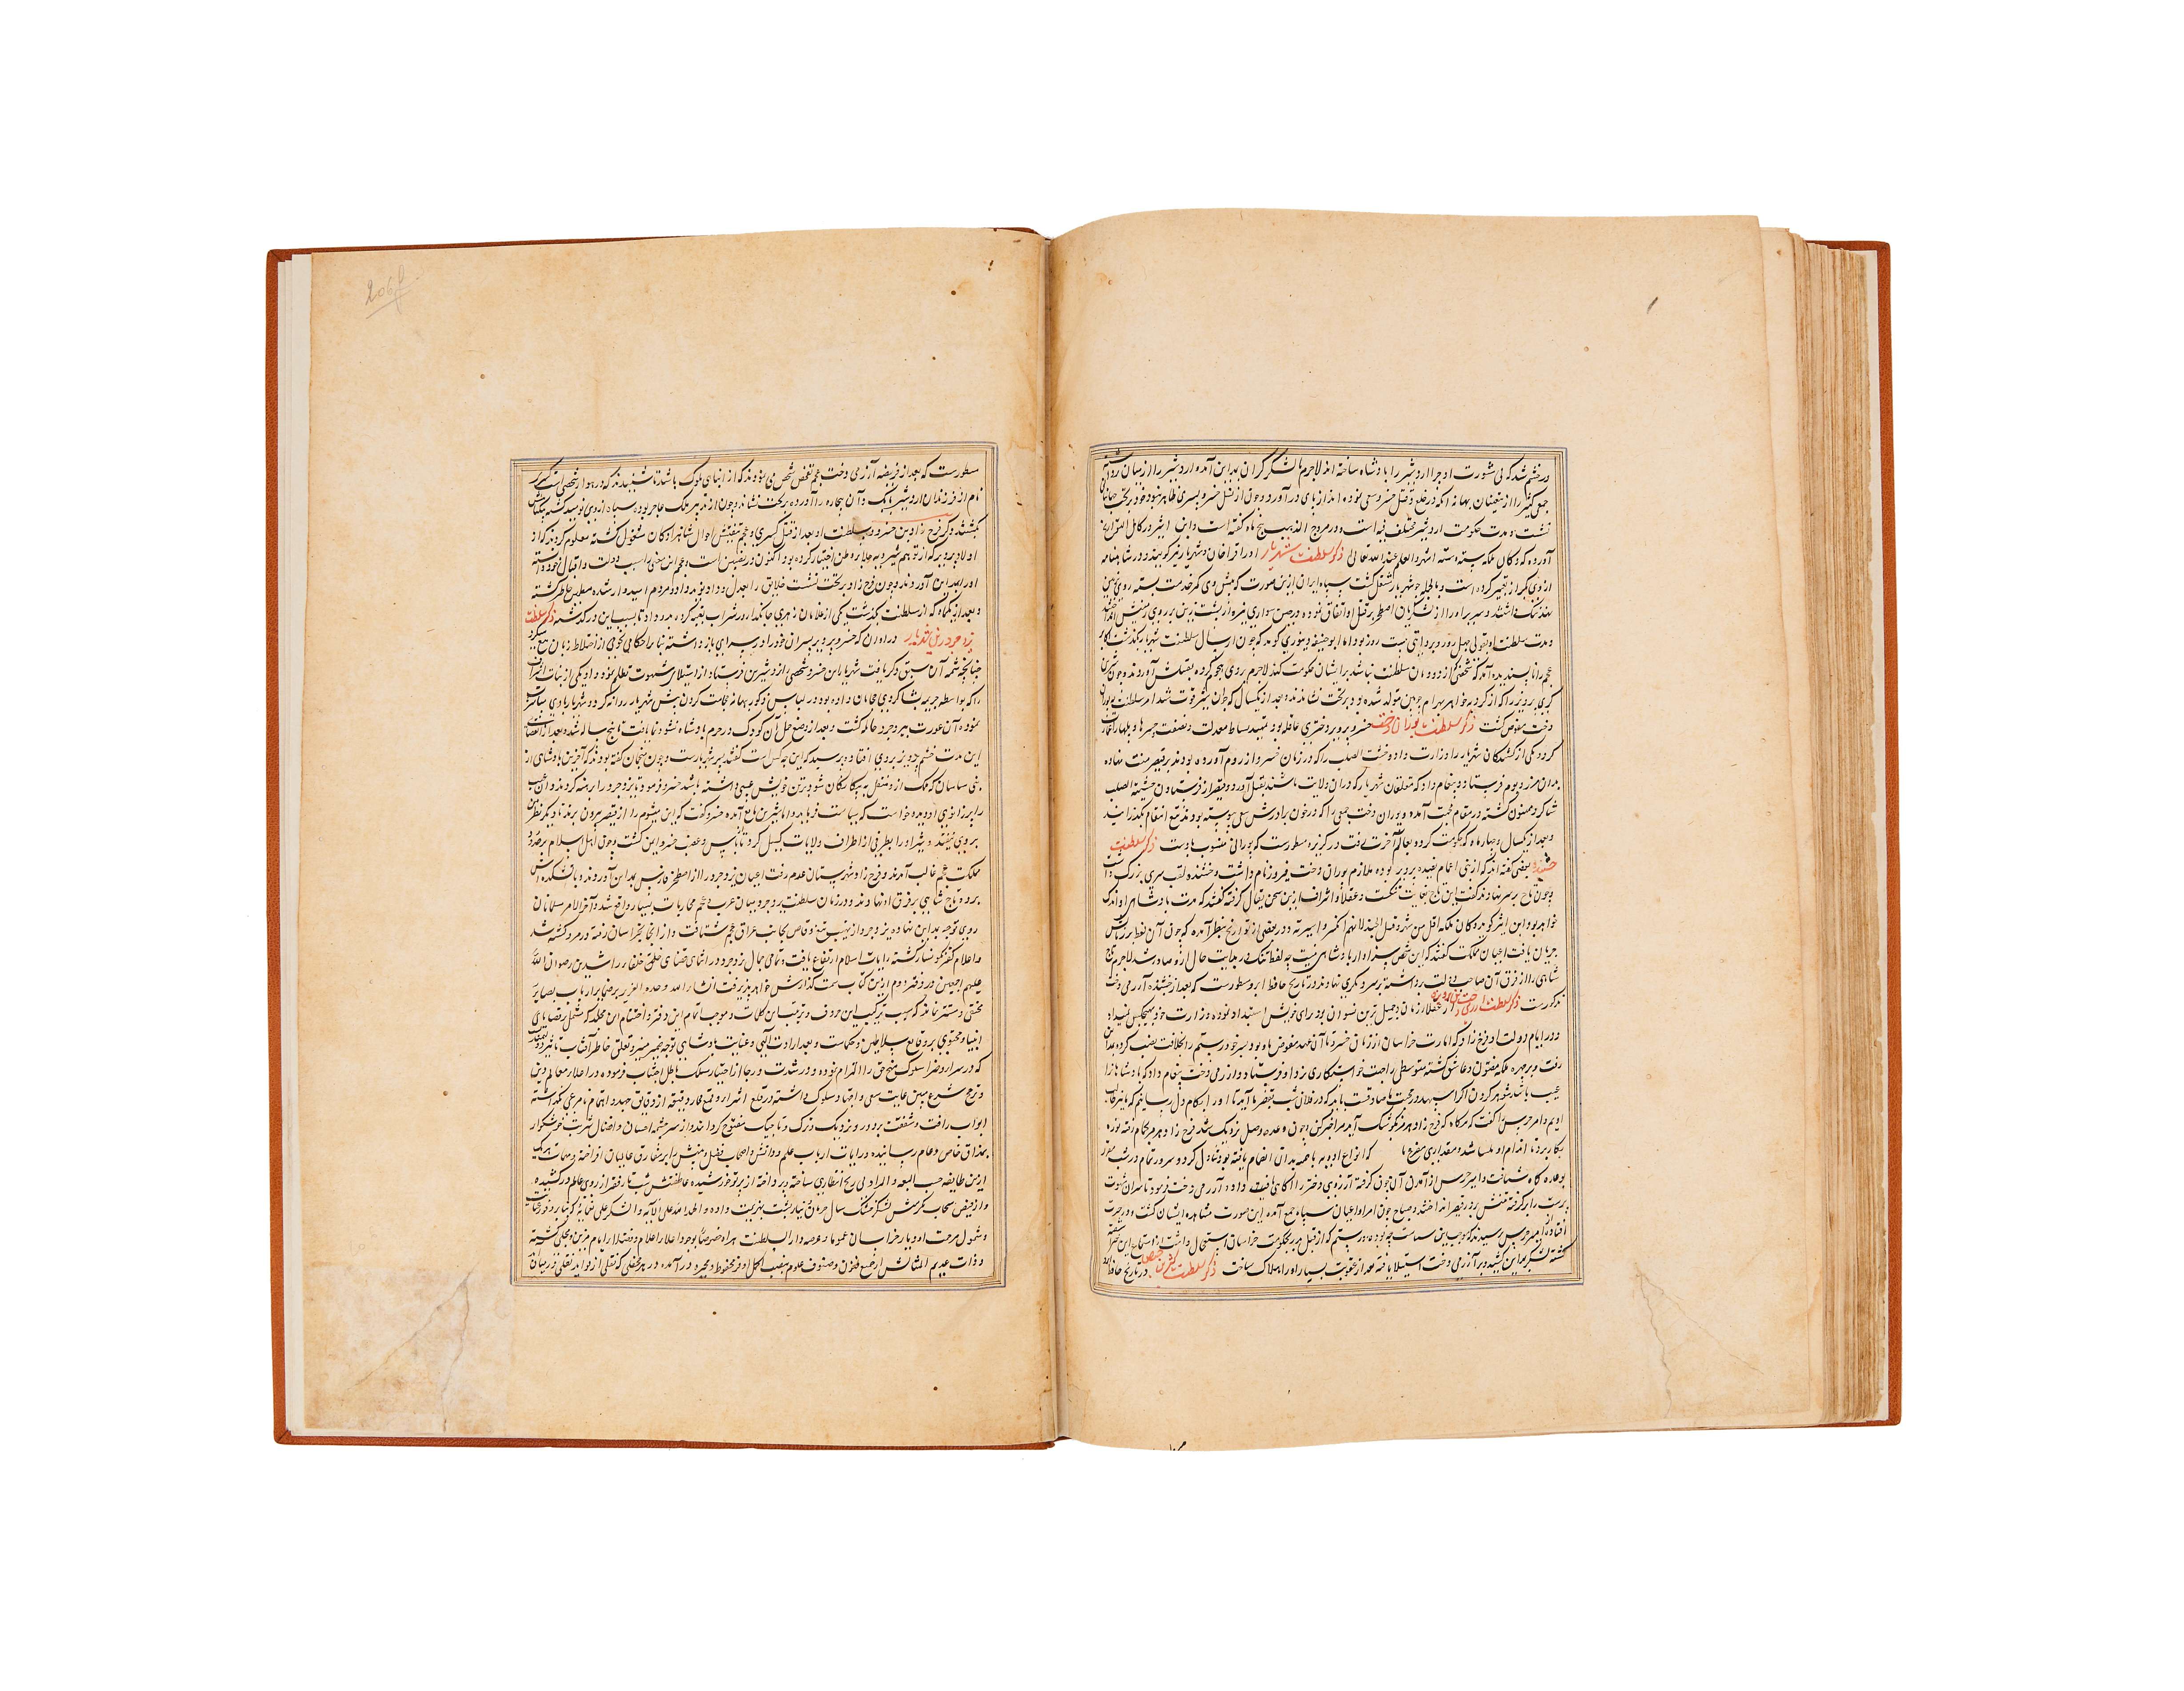 RAWDAT AL-SAFA (TARIH I MIR KHWAND) MUHAMMAD BIN KHAWAND SHAH MIR KHAWAND DATED 1498AD - Image 7 of 9